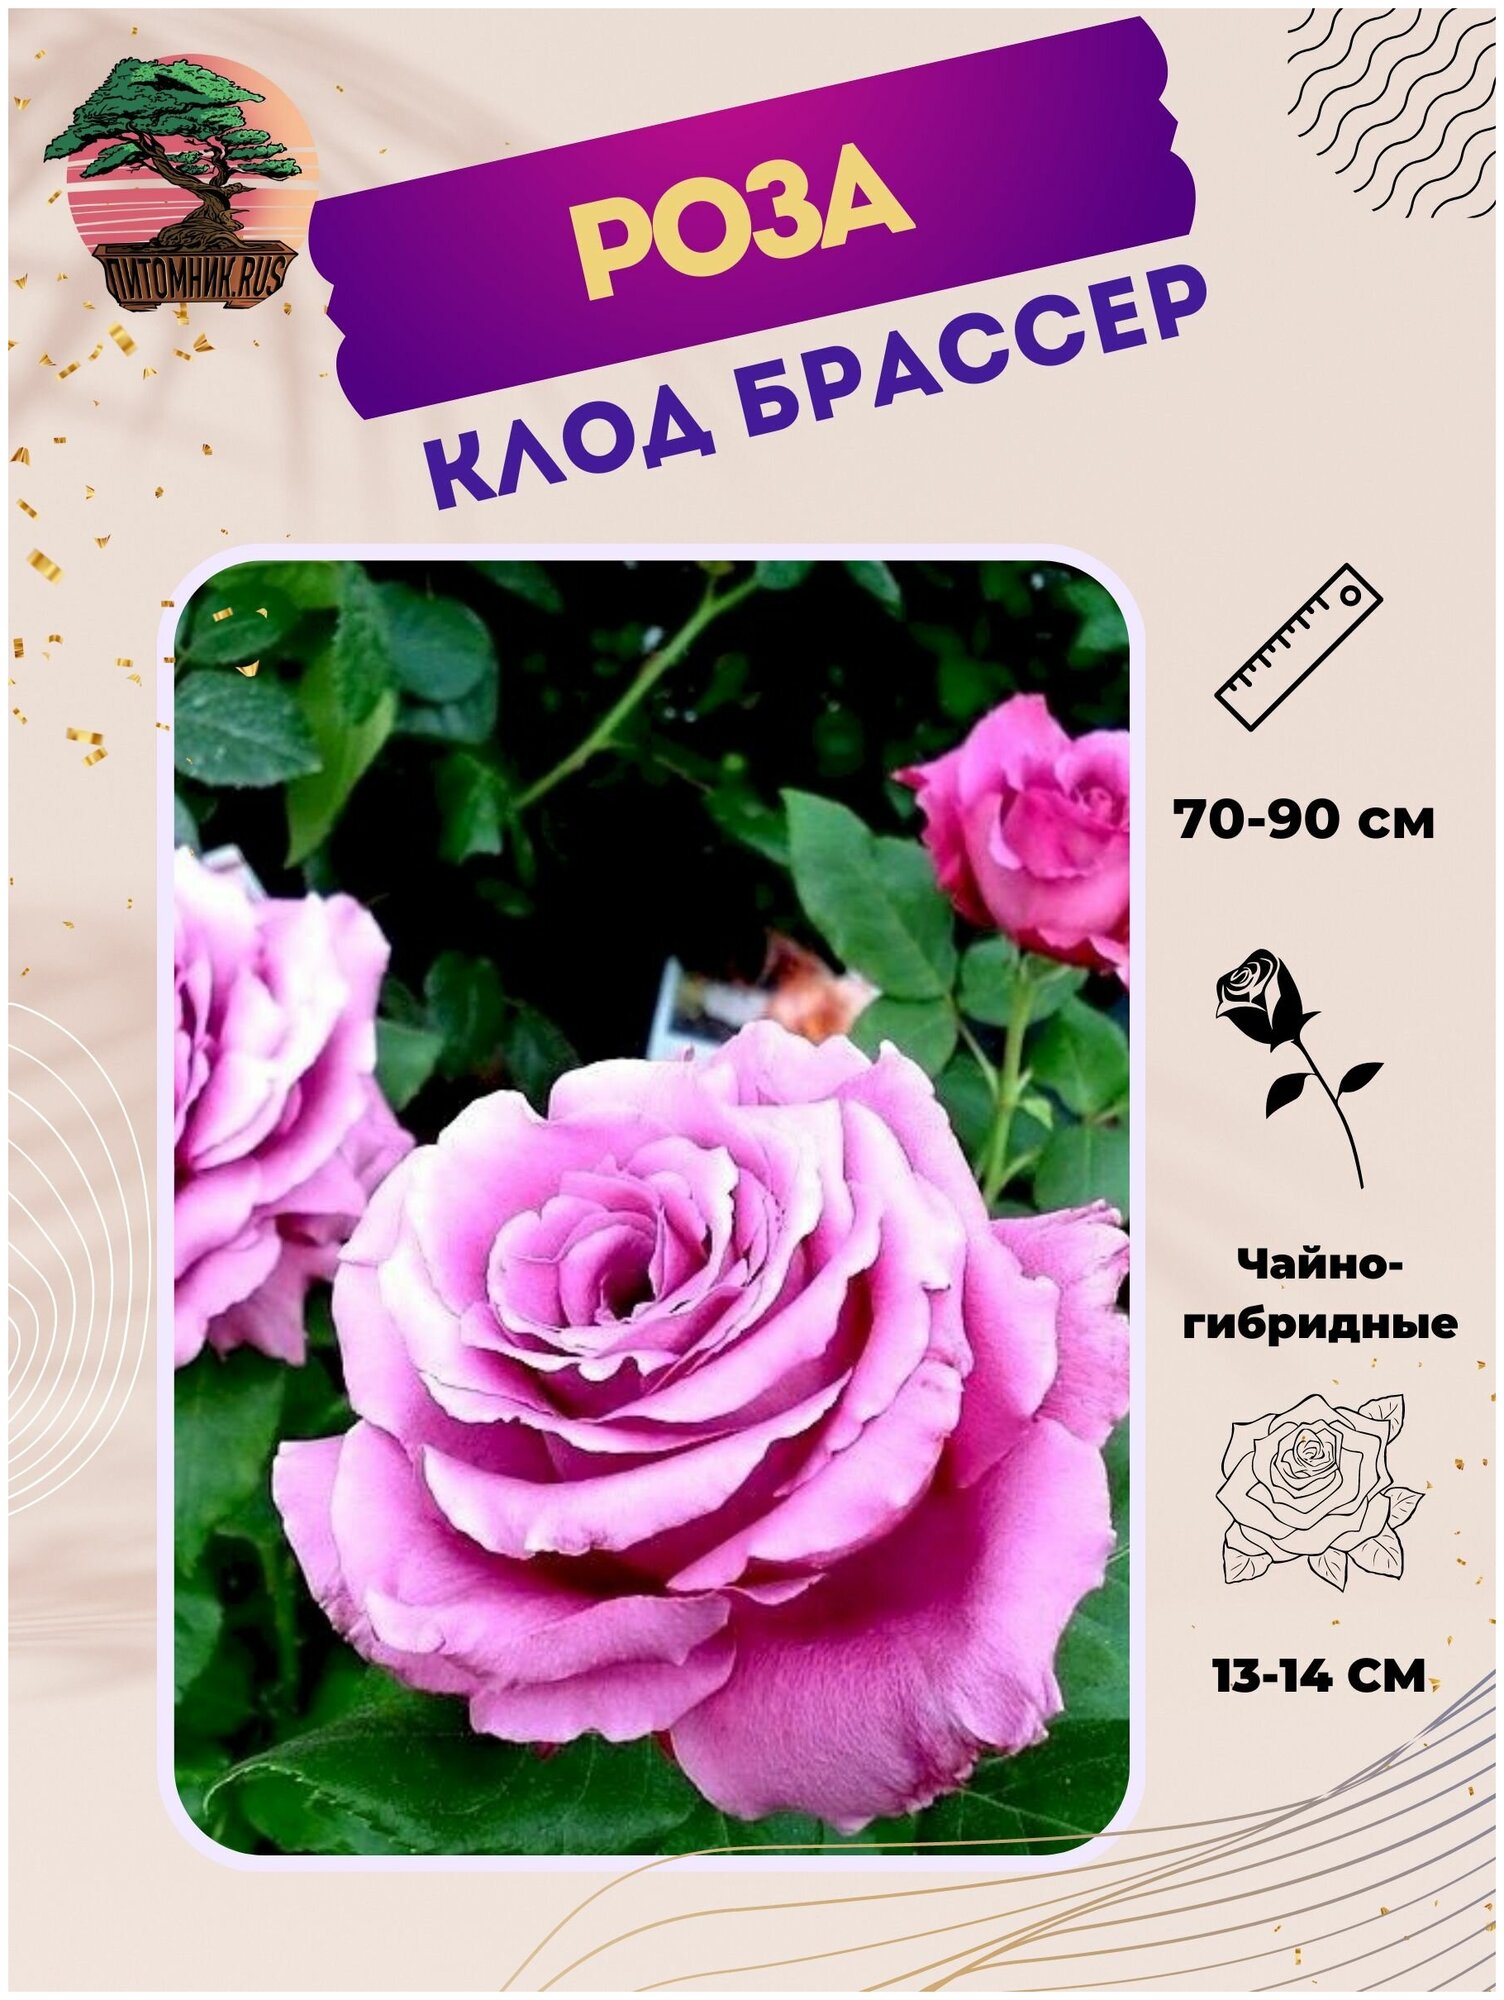 Роза Клод Брассер — купить в интернет-магазине по низкой цене на ЯндексМаркете